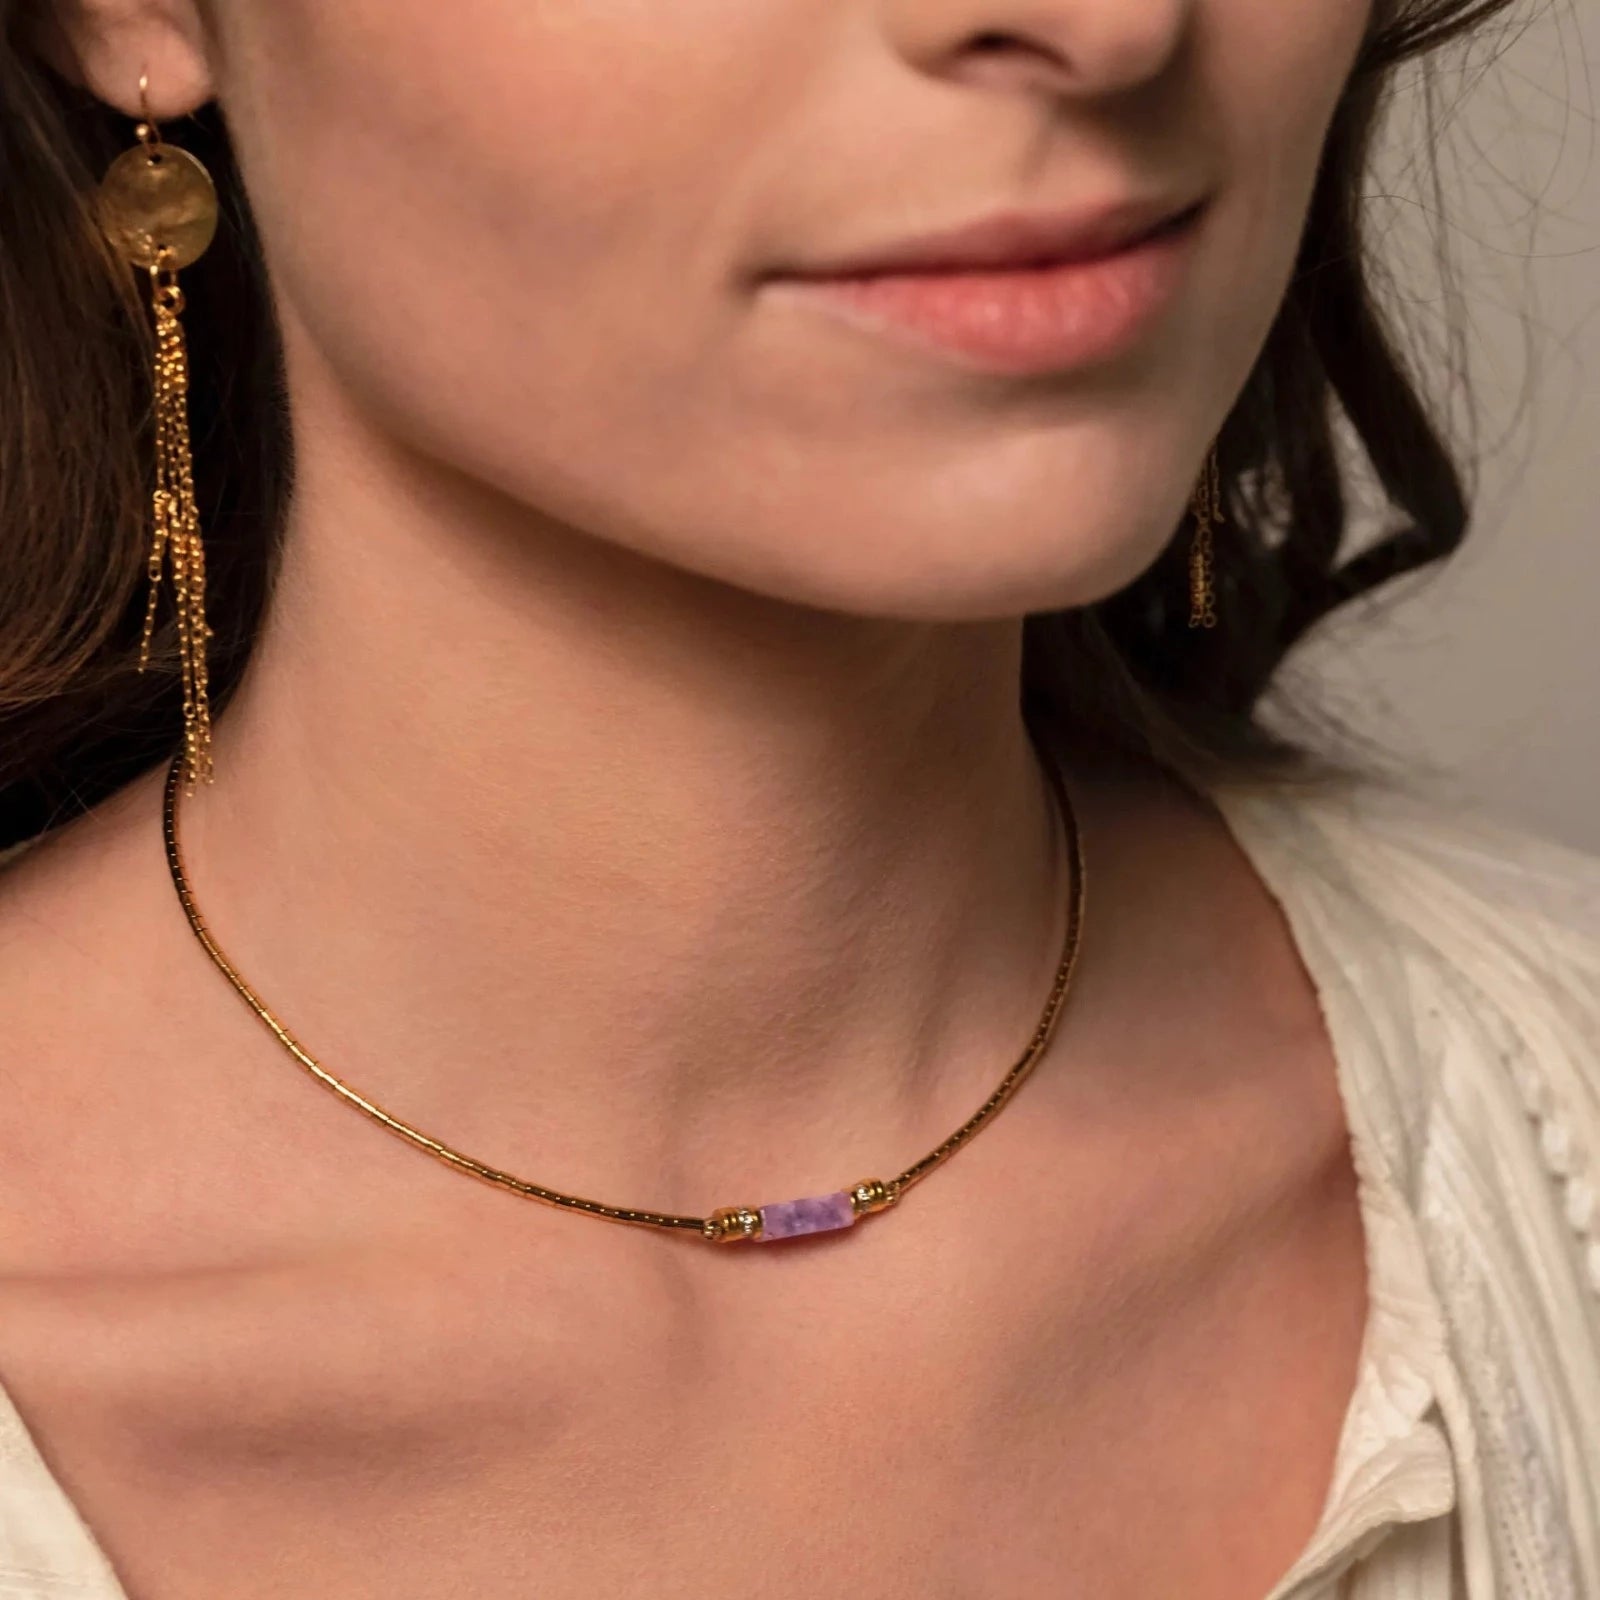 Femme brune portant des boucles d'oreilles pendantes en or et un collier or et violet fin et élégant